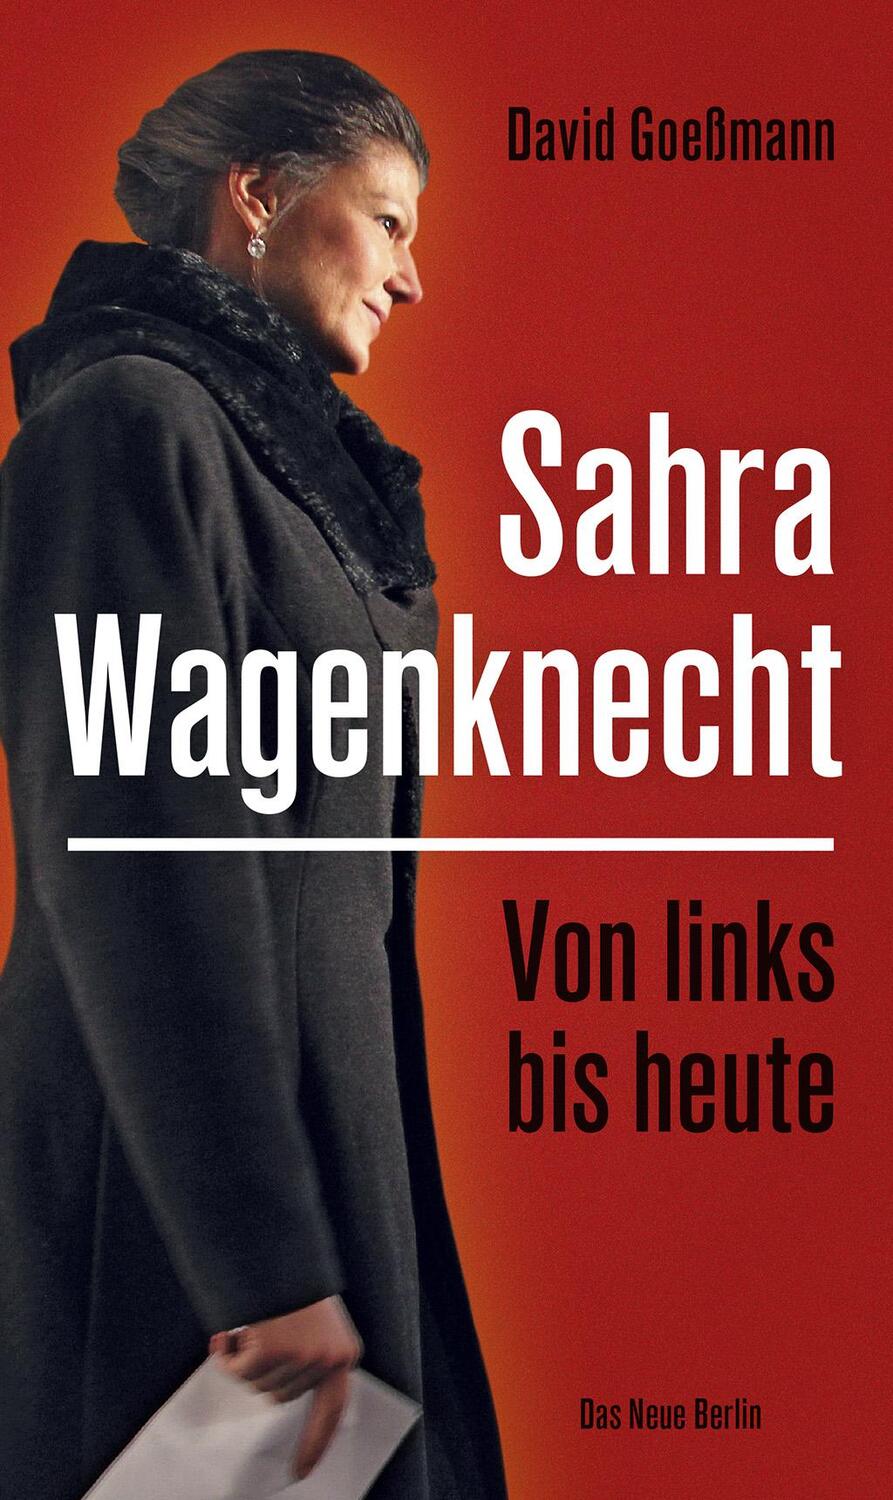 Von links bis heute: Sahra Wagenknecht - Goeßmann, David